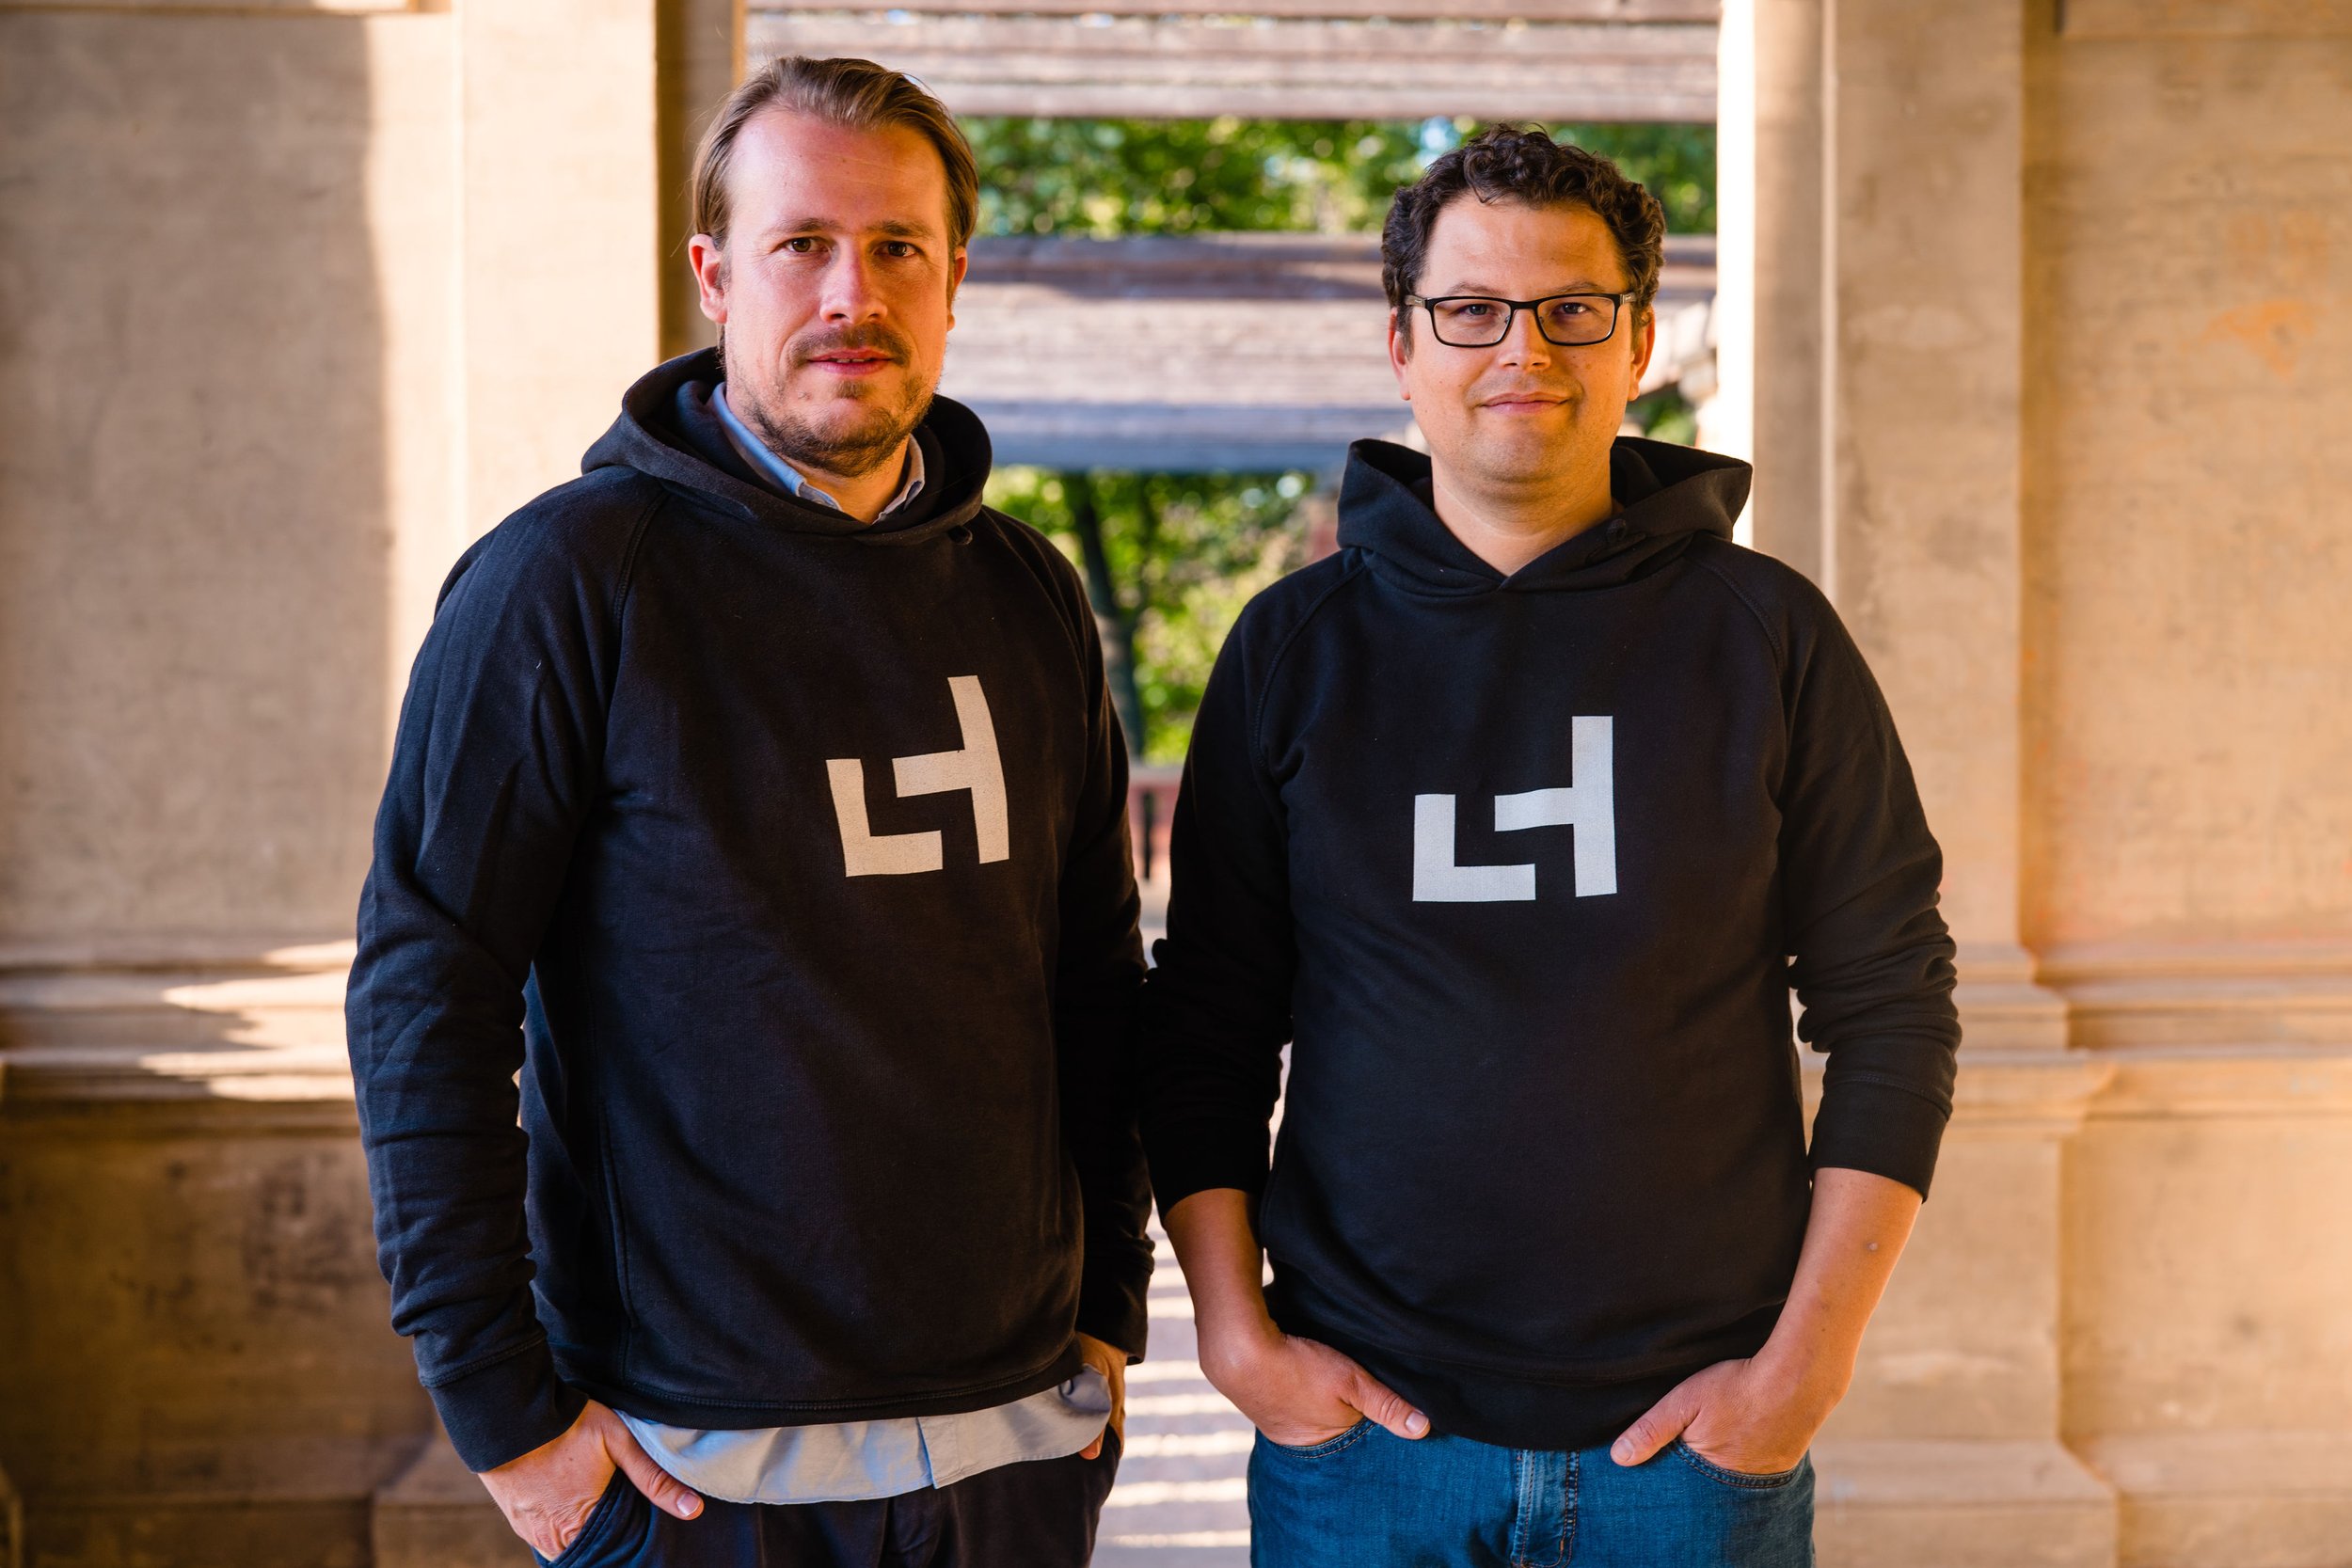 Co-fondateurs de Laserhub qui est client de Werk24